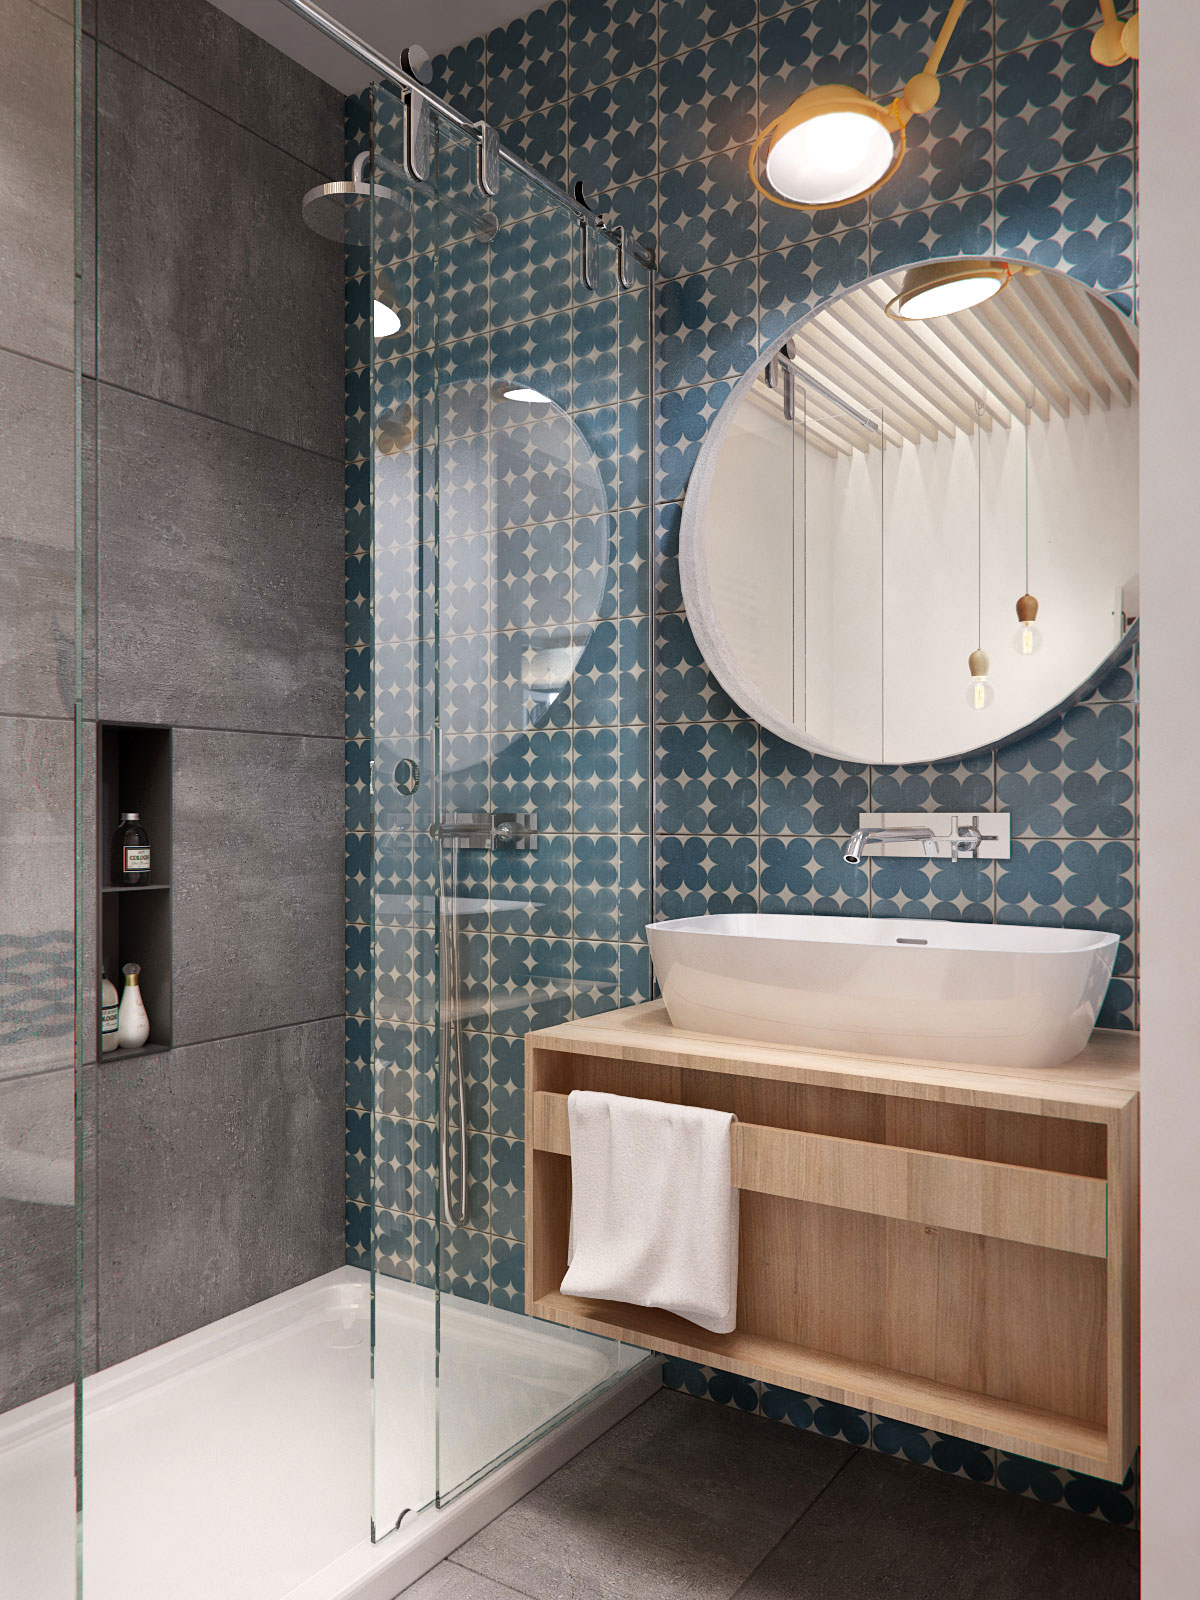 Серая и сине-белая плитка в дизайне стен ванной